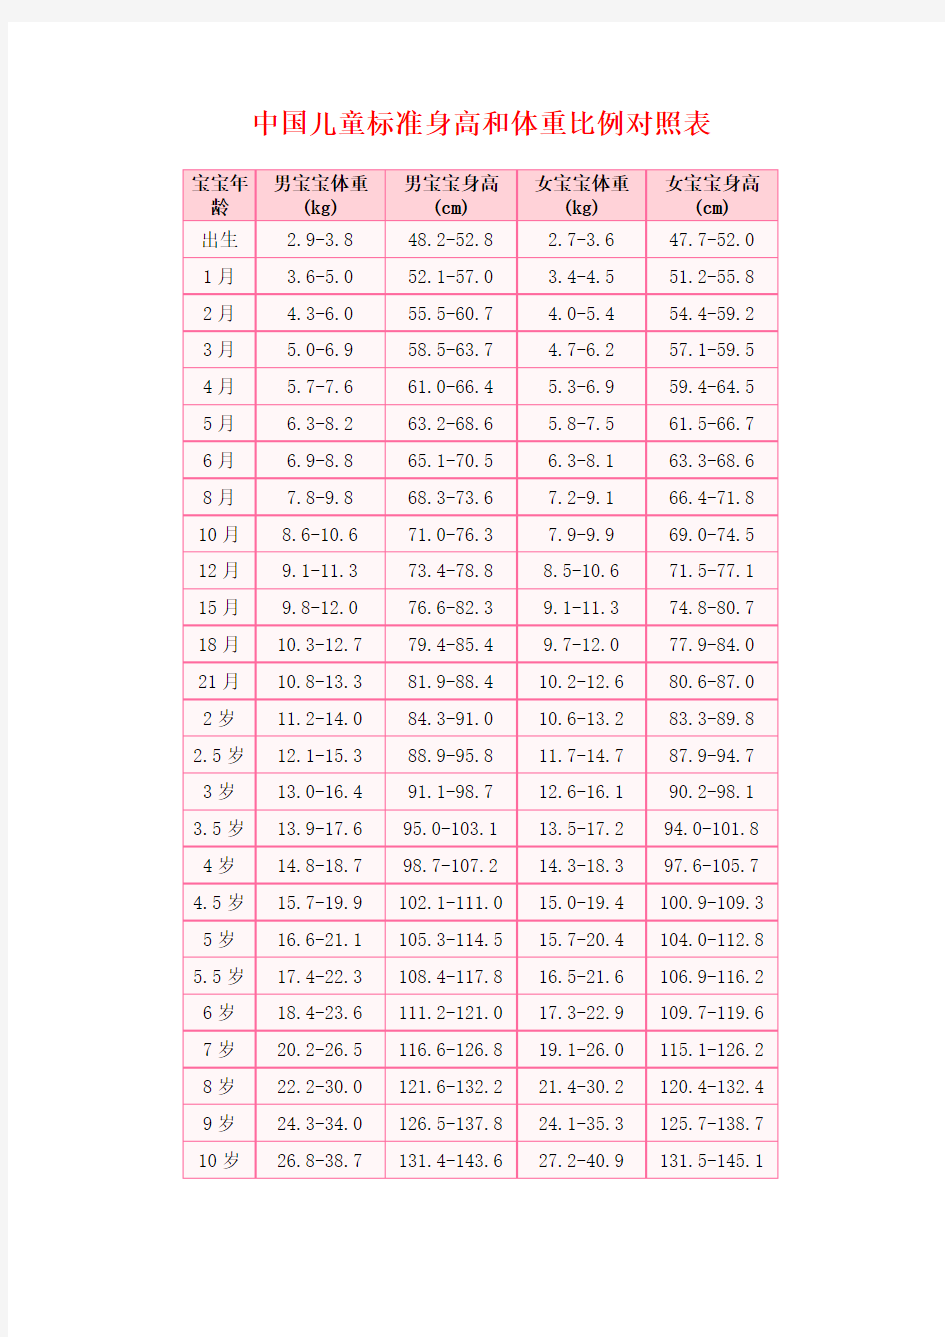 中国儿童标准身高和体重比例对照表